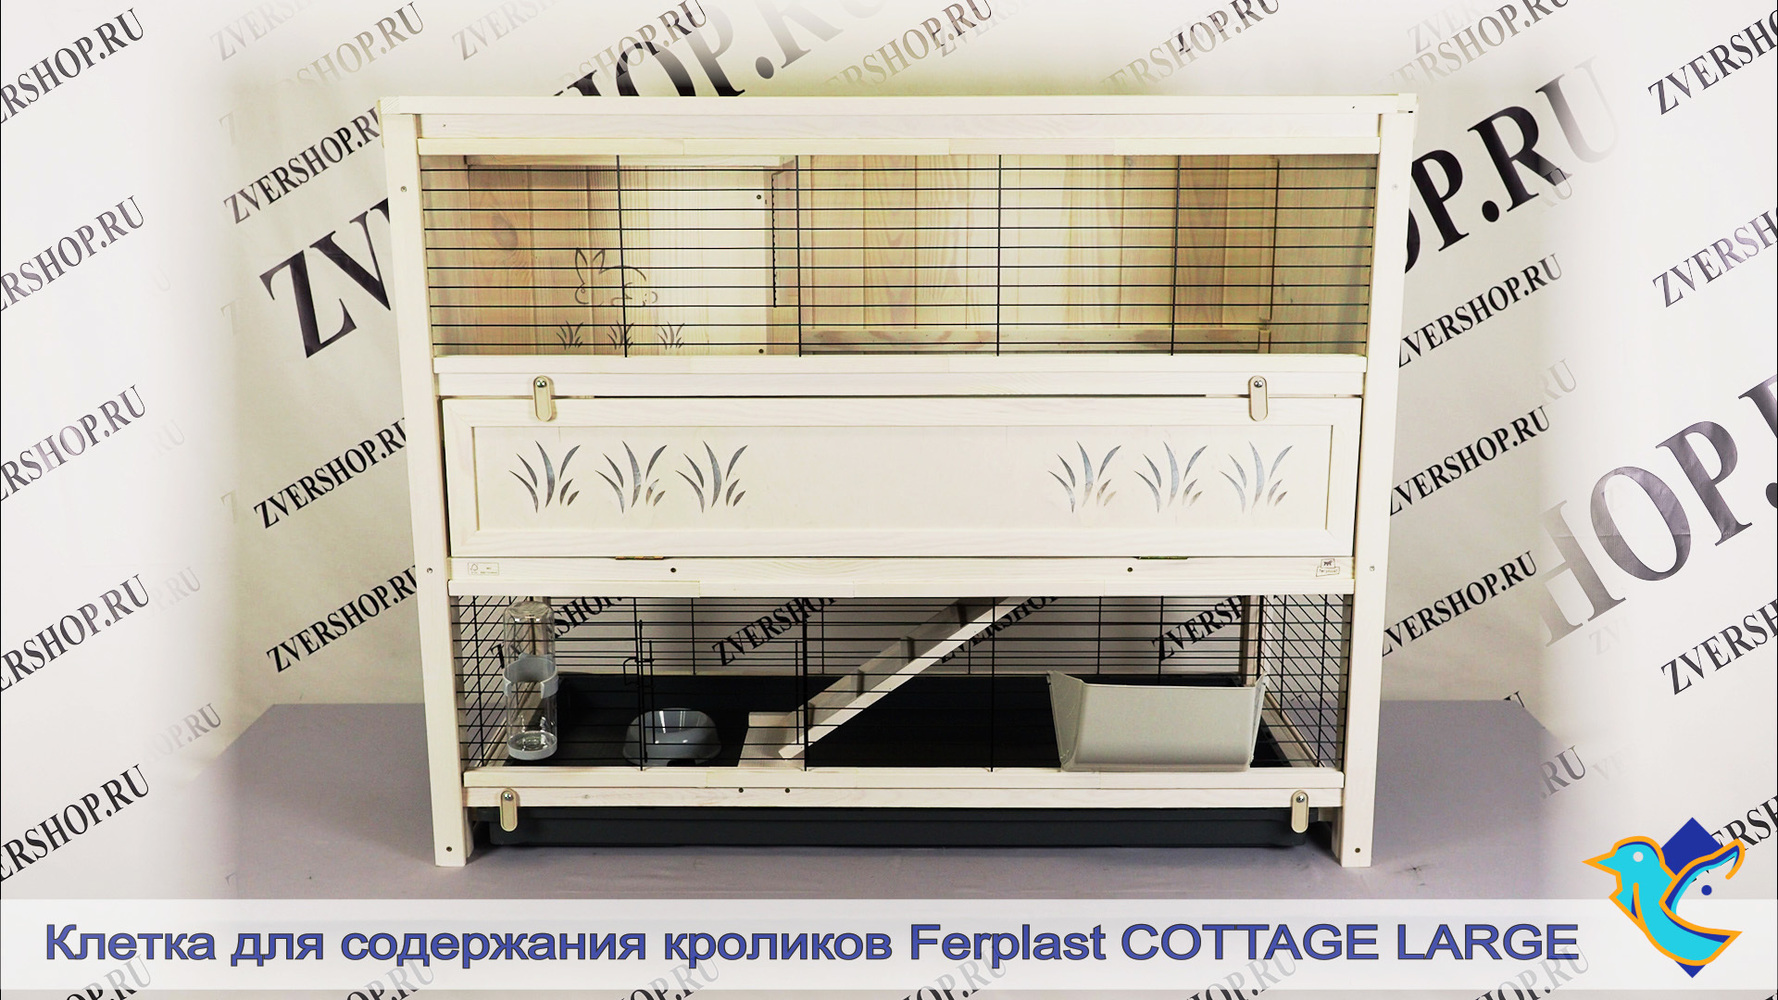 Фото Клетка Cottage Large для содержания кроликов в помещении (деревянная) Ferplast 129*68*103,5 см 